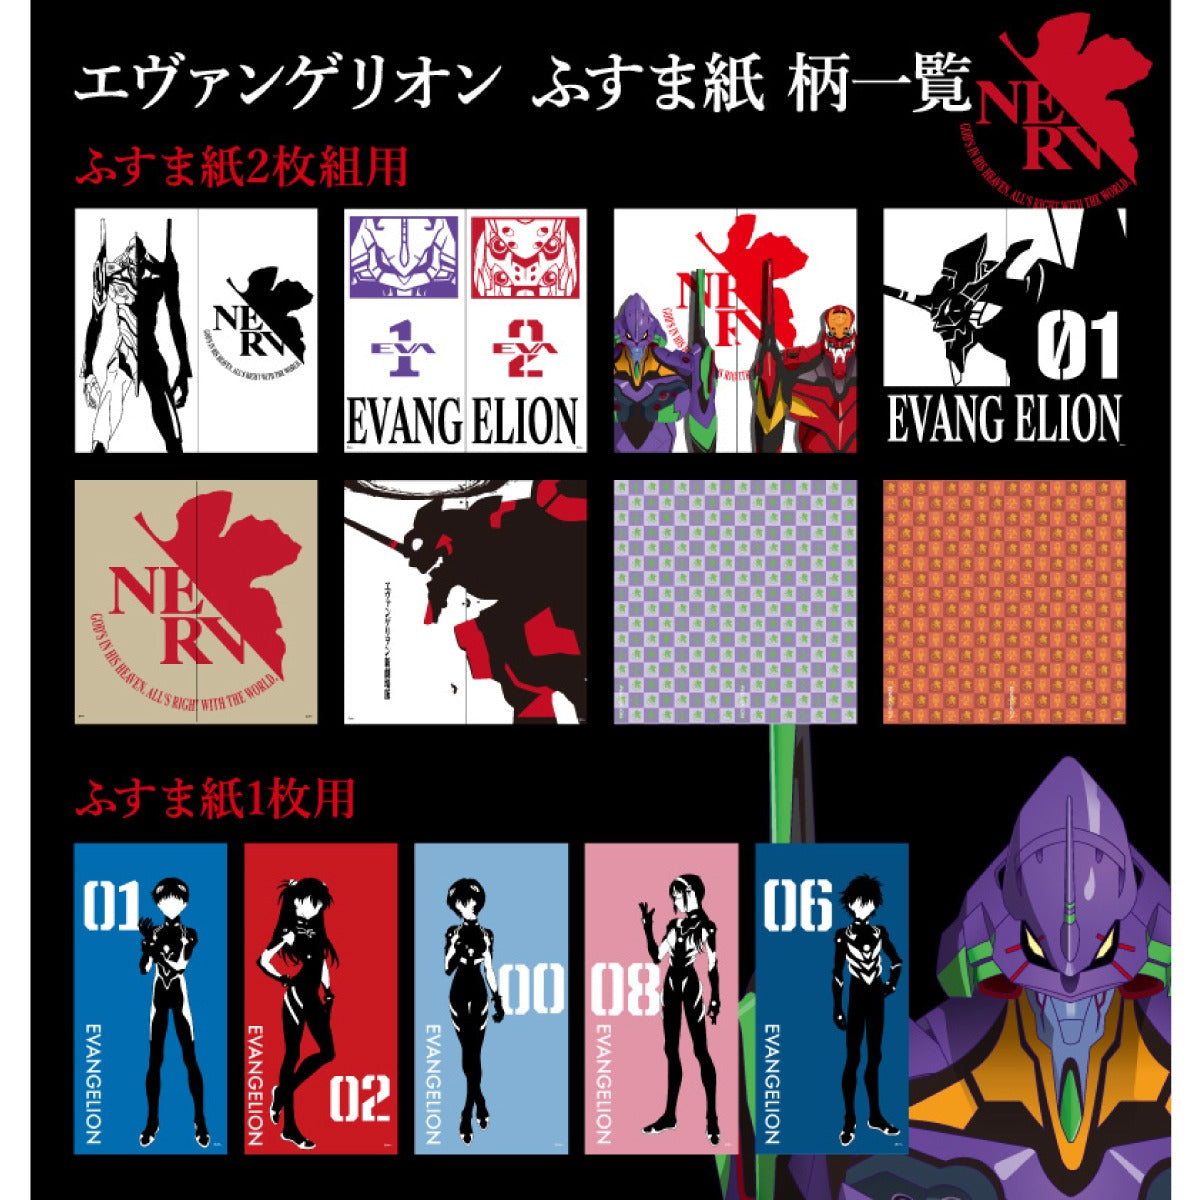 Fusuma paper Evangelion EVA-001F Width 92cm x Length 182cm 2 sheets 1 set Asahipen